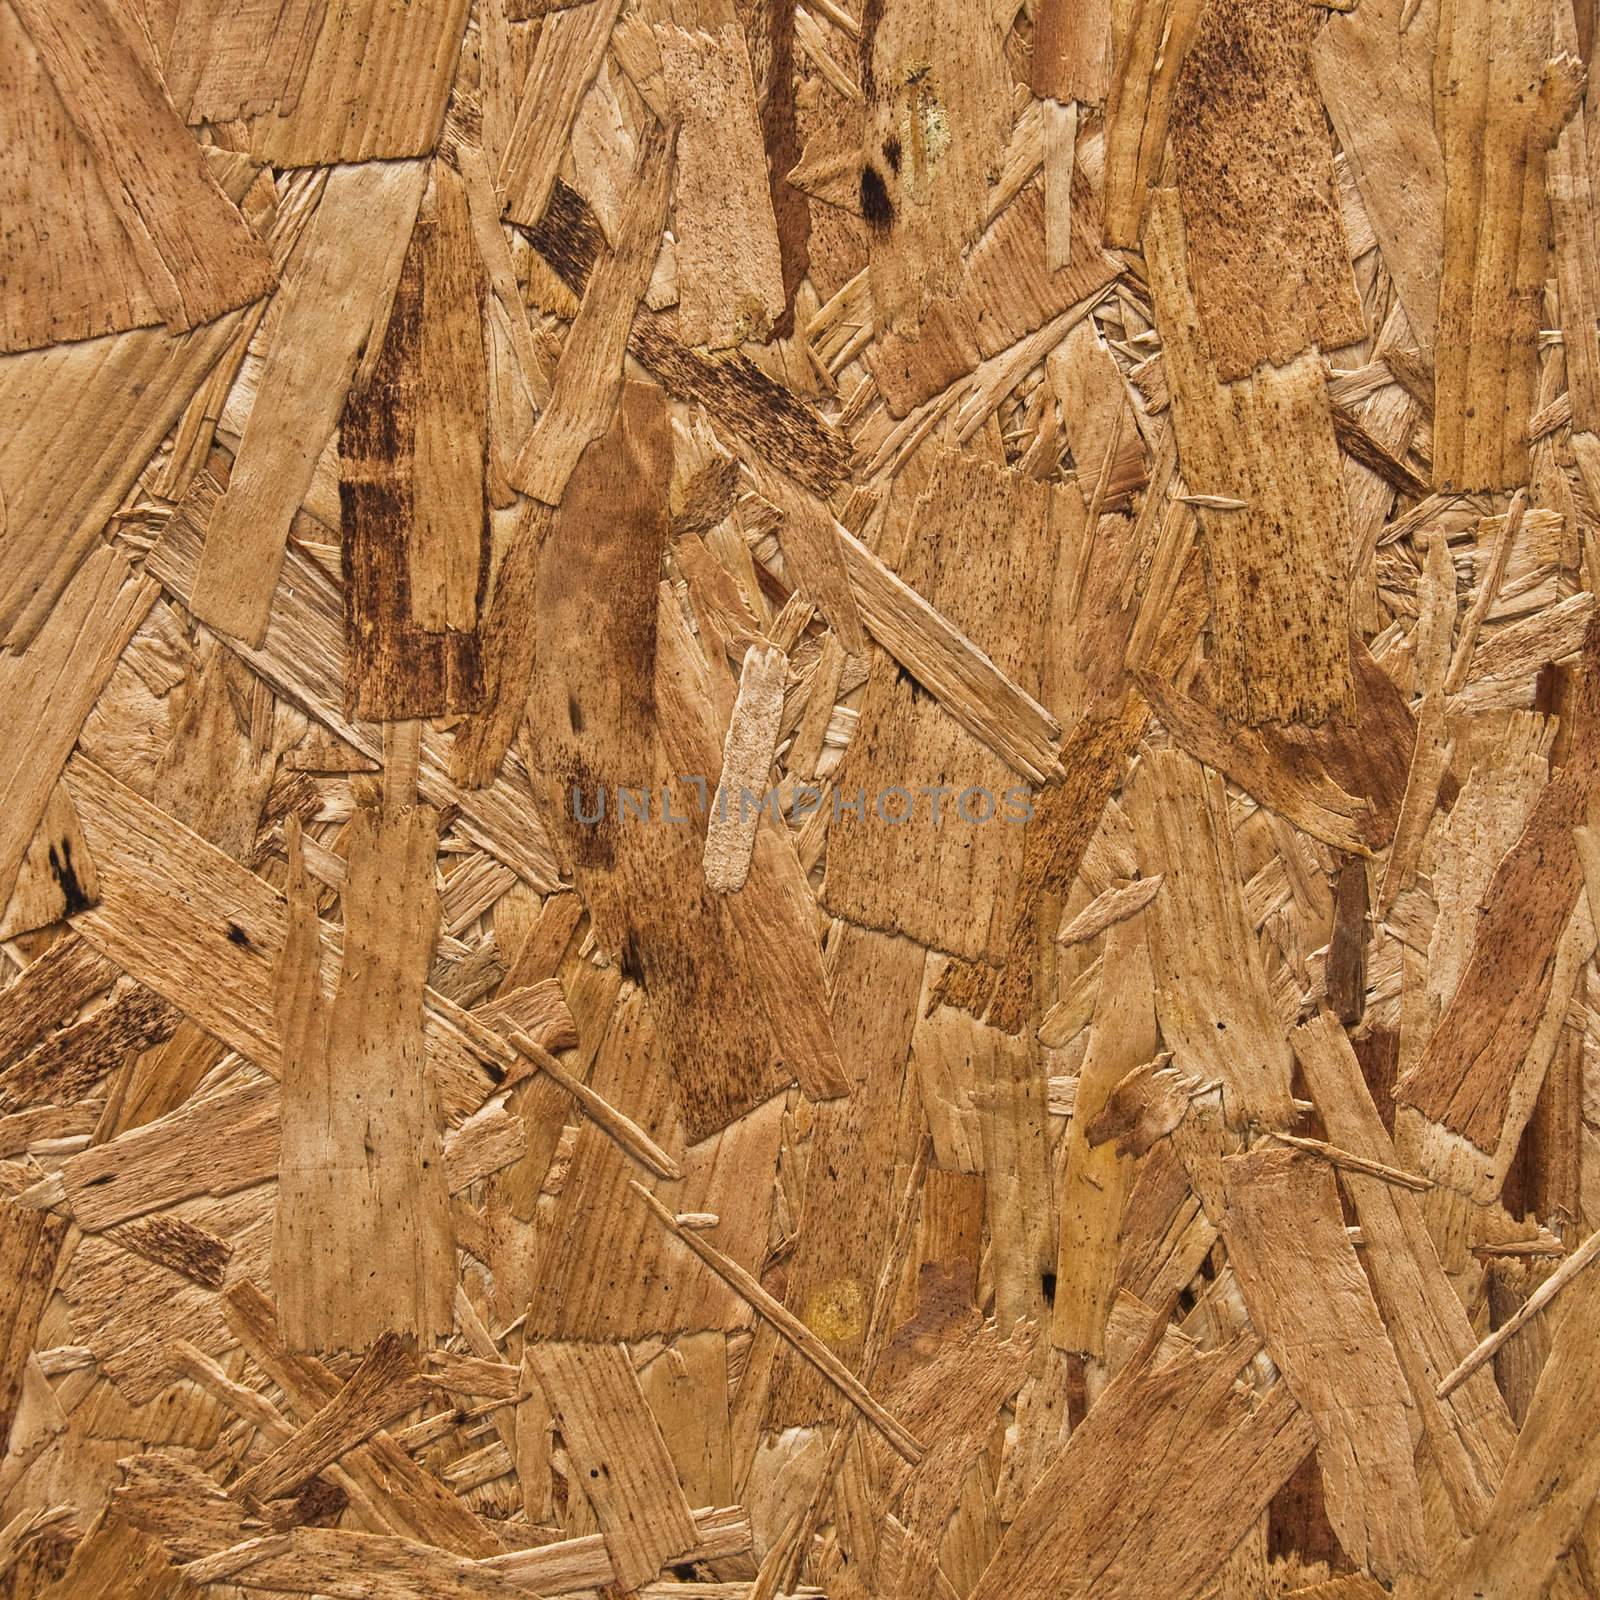 Wood texture by dutourdumonde